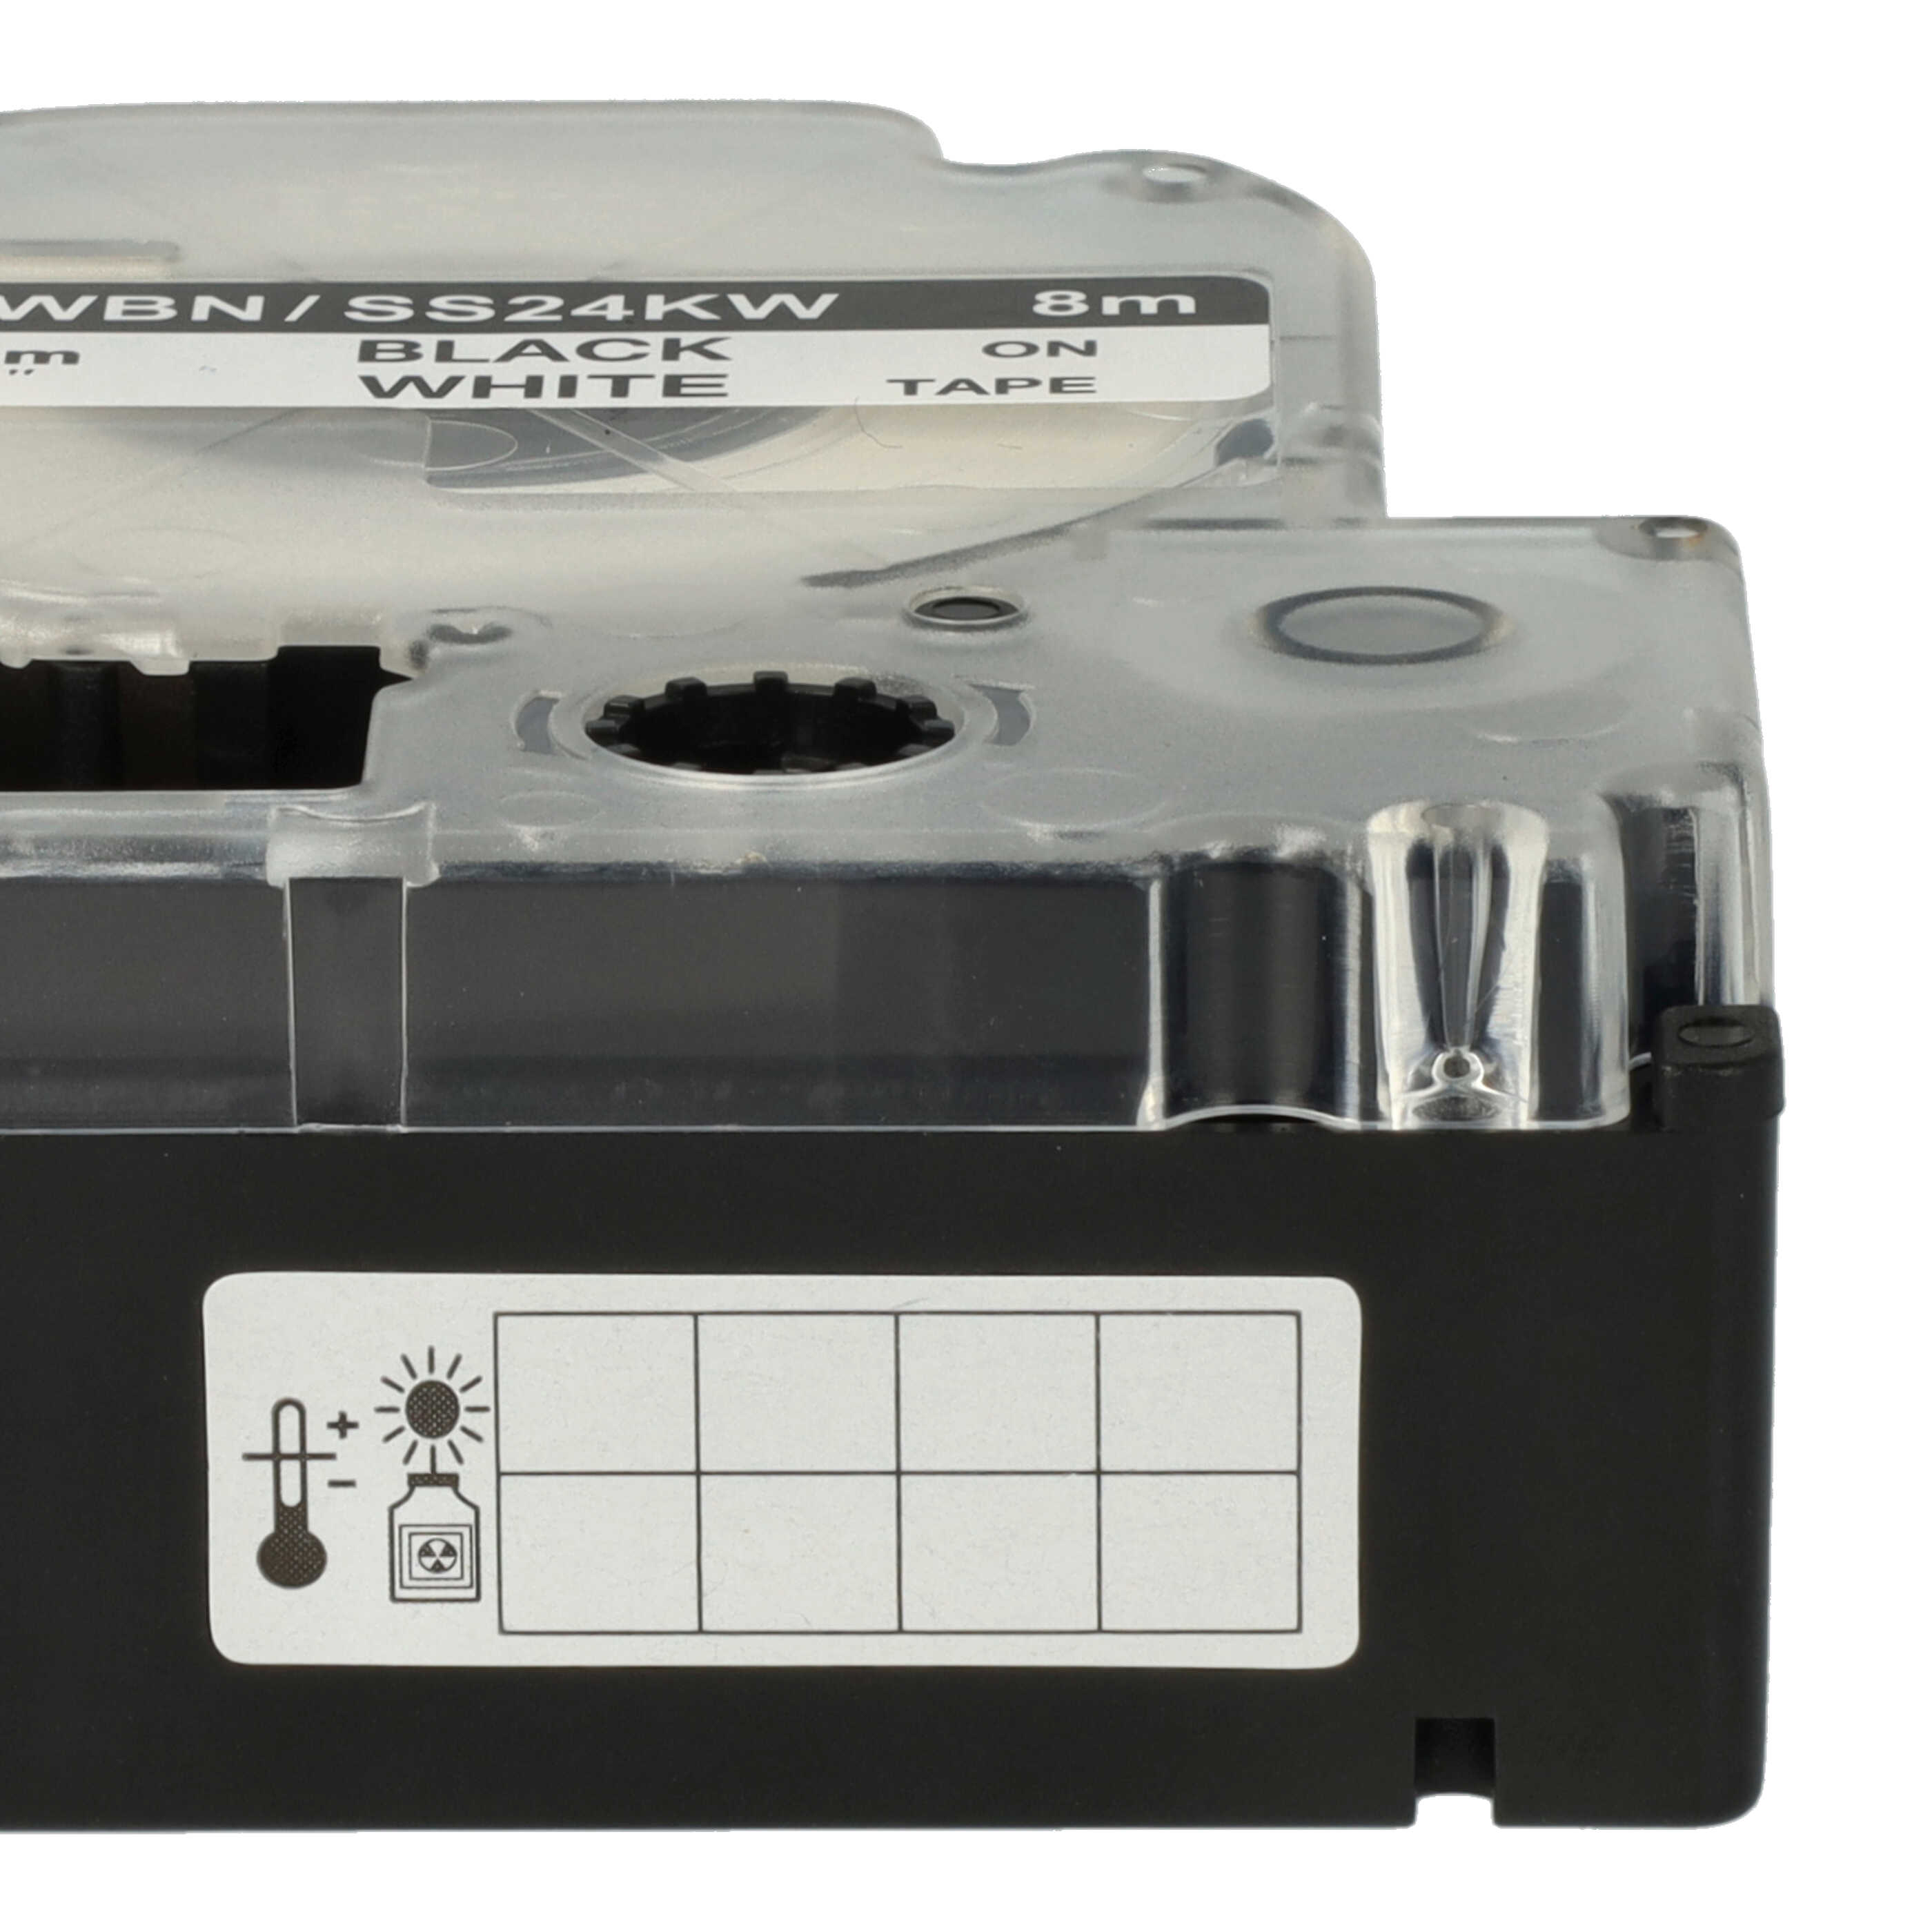 50x Cassetta nastro sostituisce Epson LC-6WBN per etichettatrice Epson 24mm nero su bianco